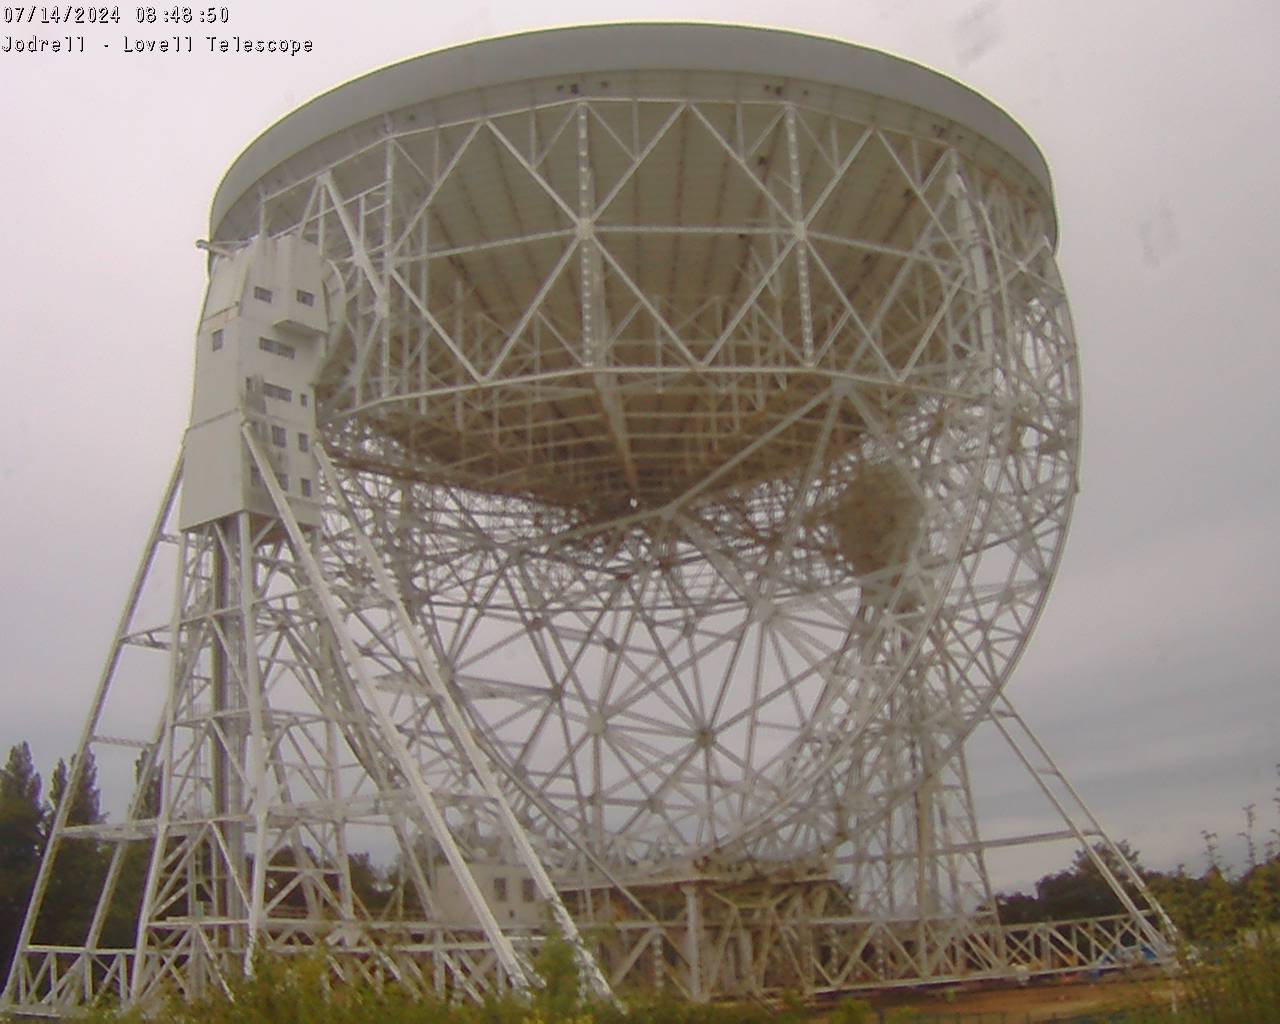 Jodrell Bank Observatory Sab. 08:49